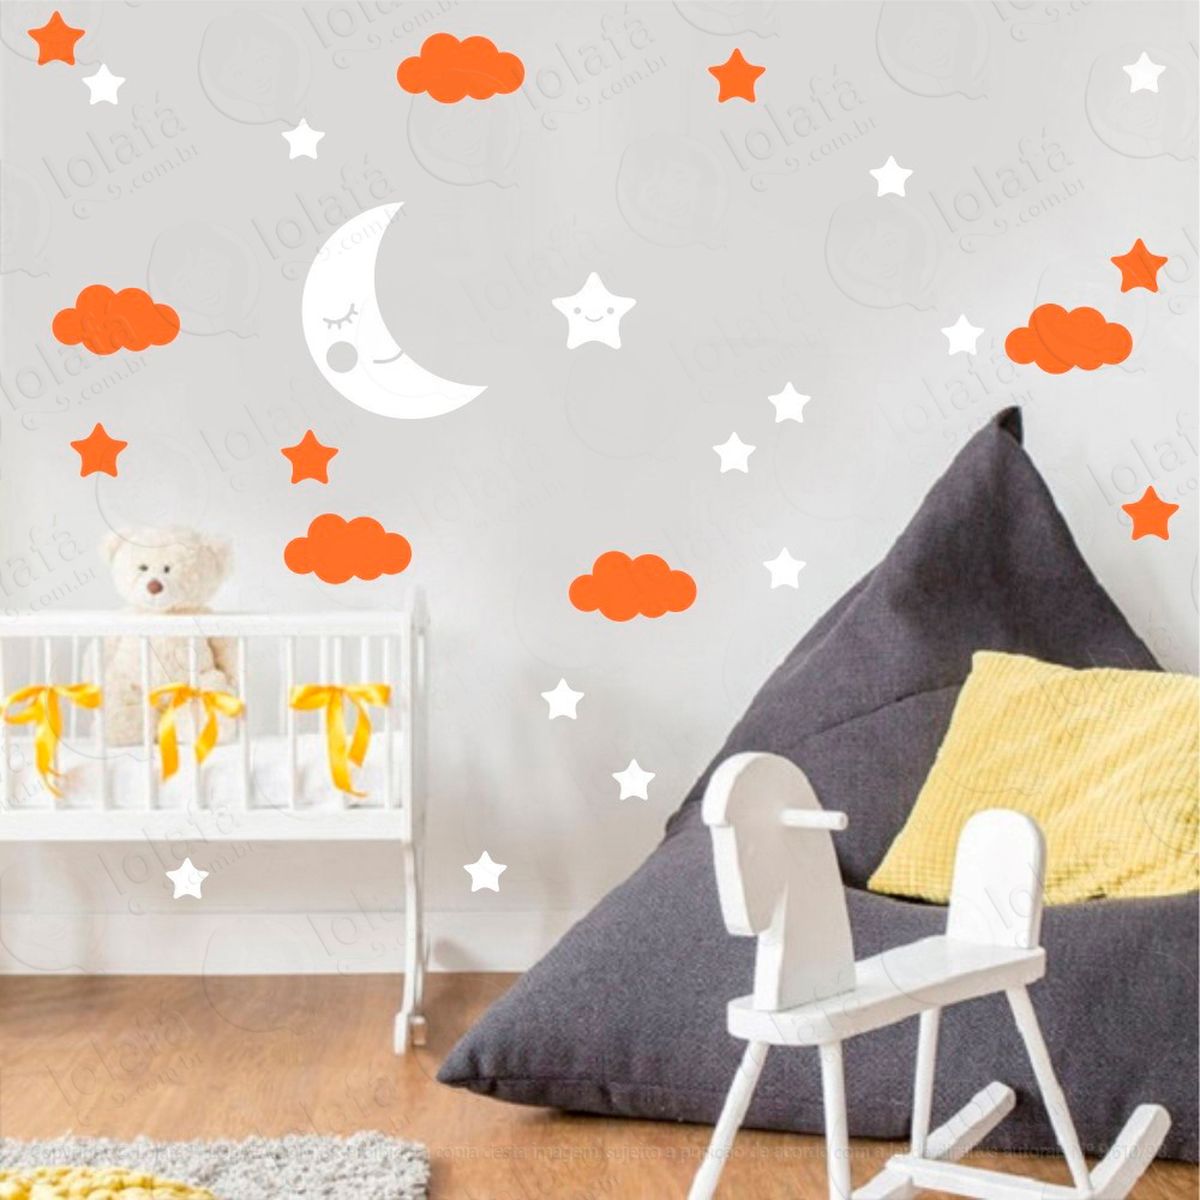 adesivos lua nuvens e estrelas 38 peças adesivos para quarto de bebê infantil - mod:660